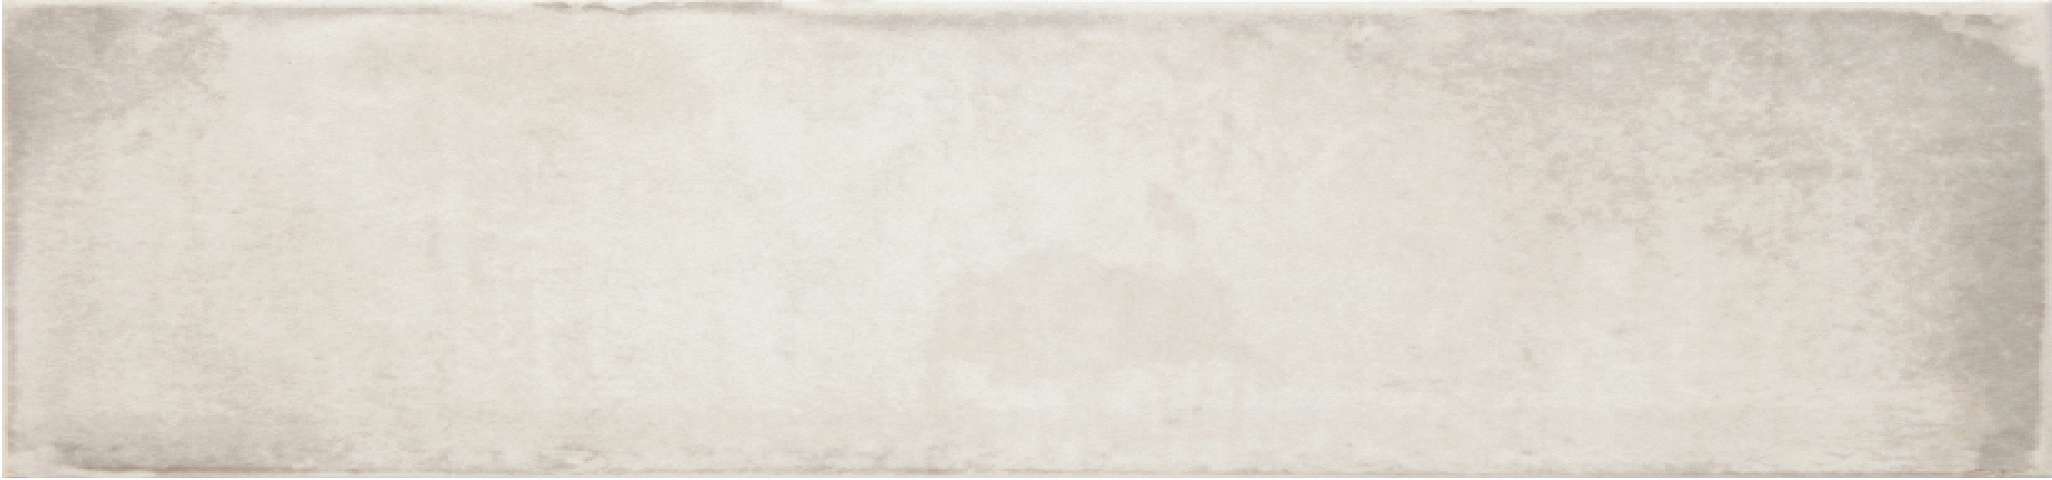 Original Style Tileworks Montblanc White Tile 7.5x30cm